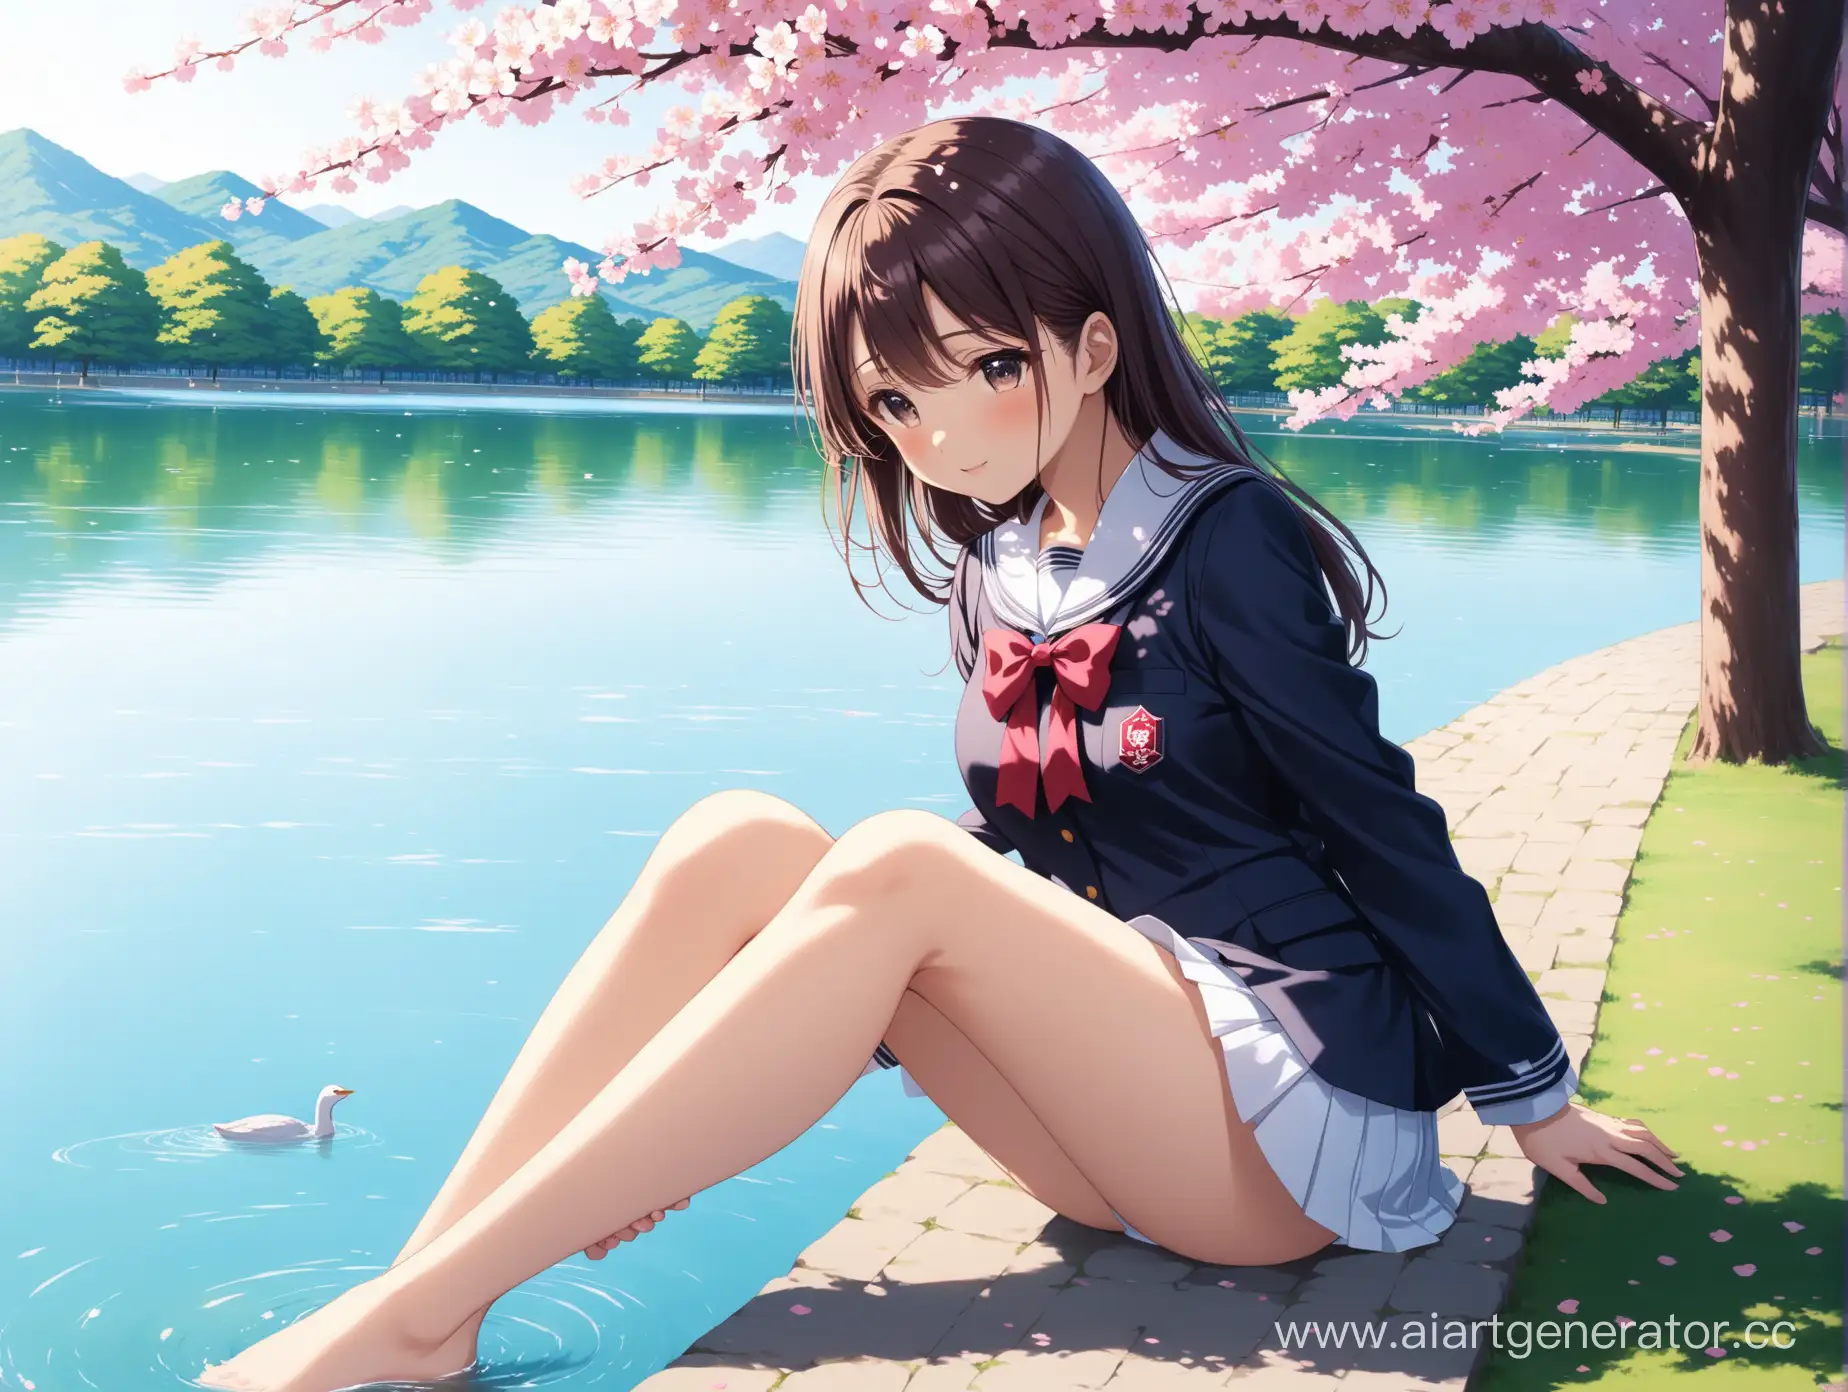 девушка в школьной униформе, парк с озером, парк в сакуре, школьница купает в озере ноги, g япония, 4k FHD
